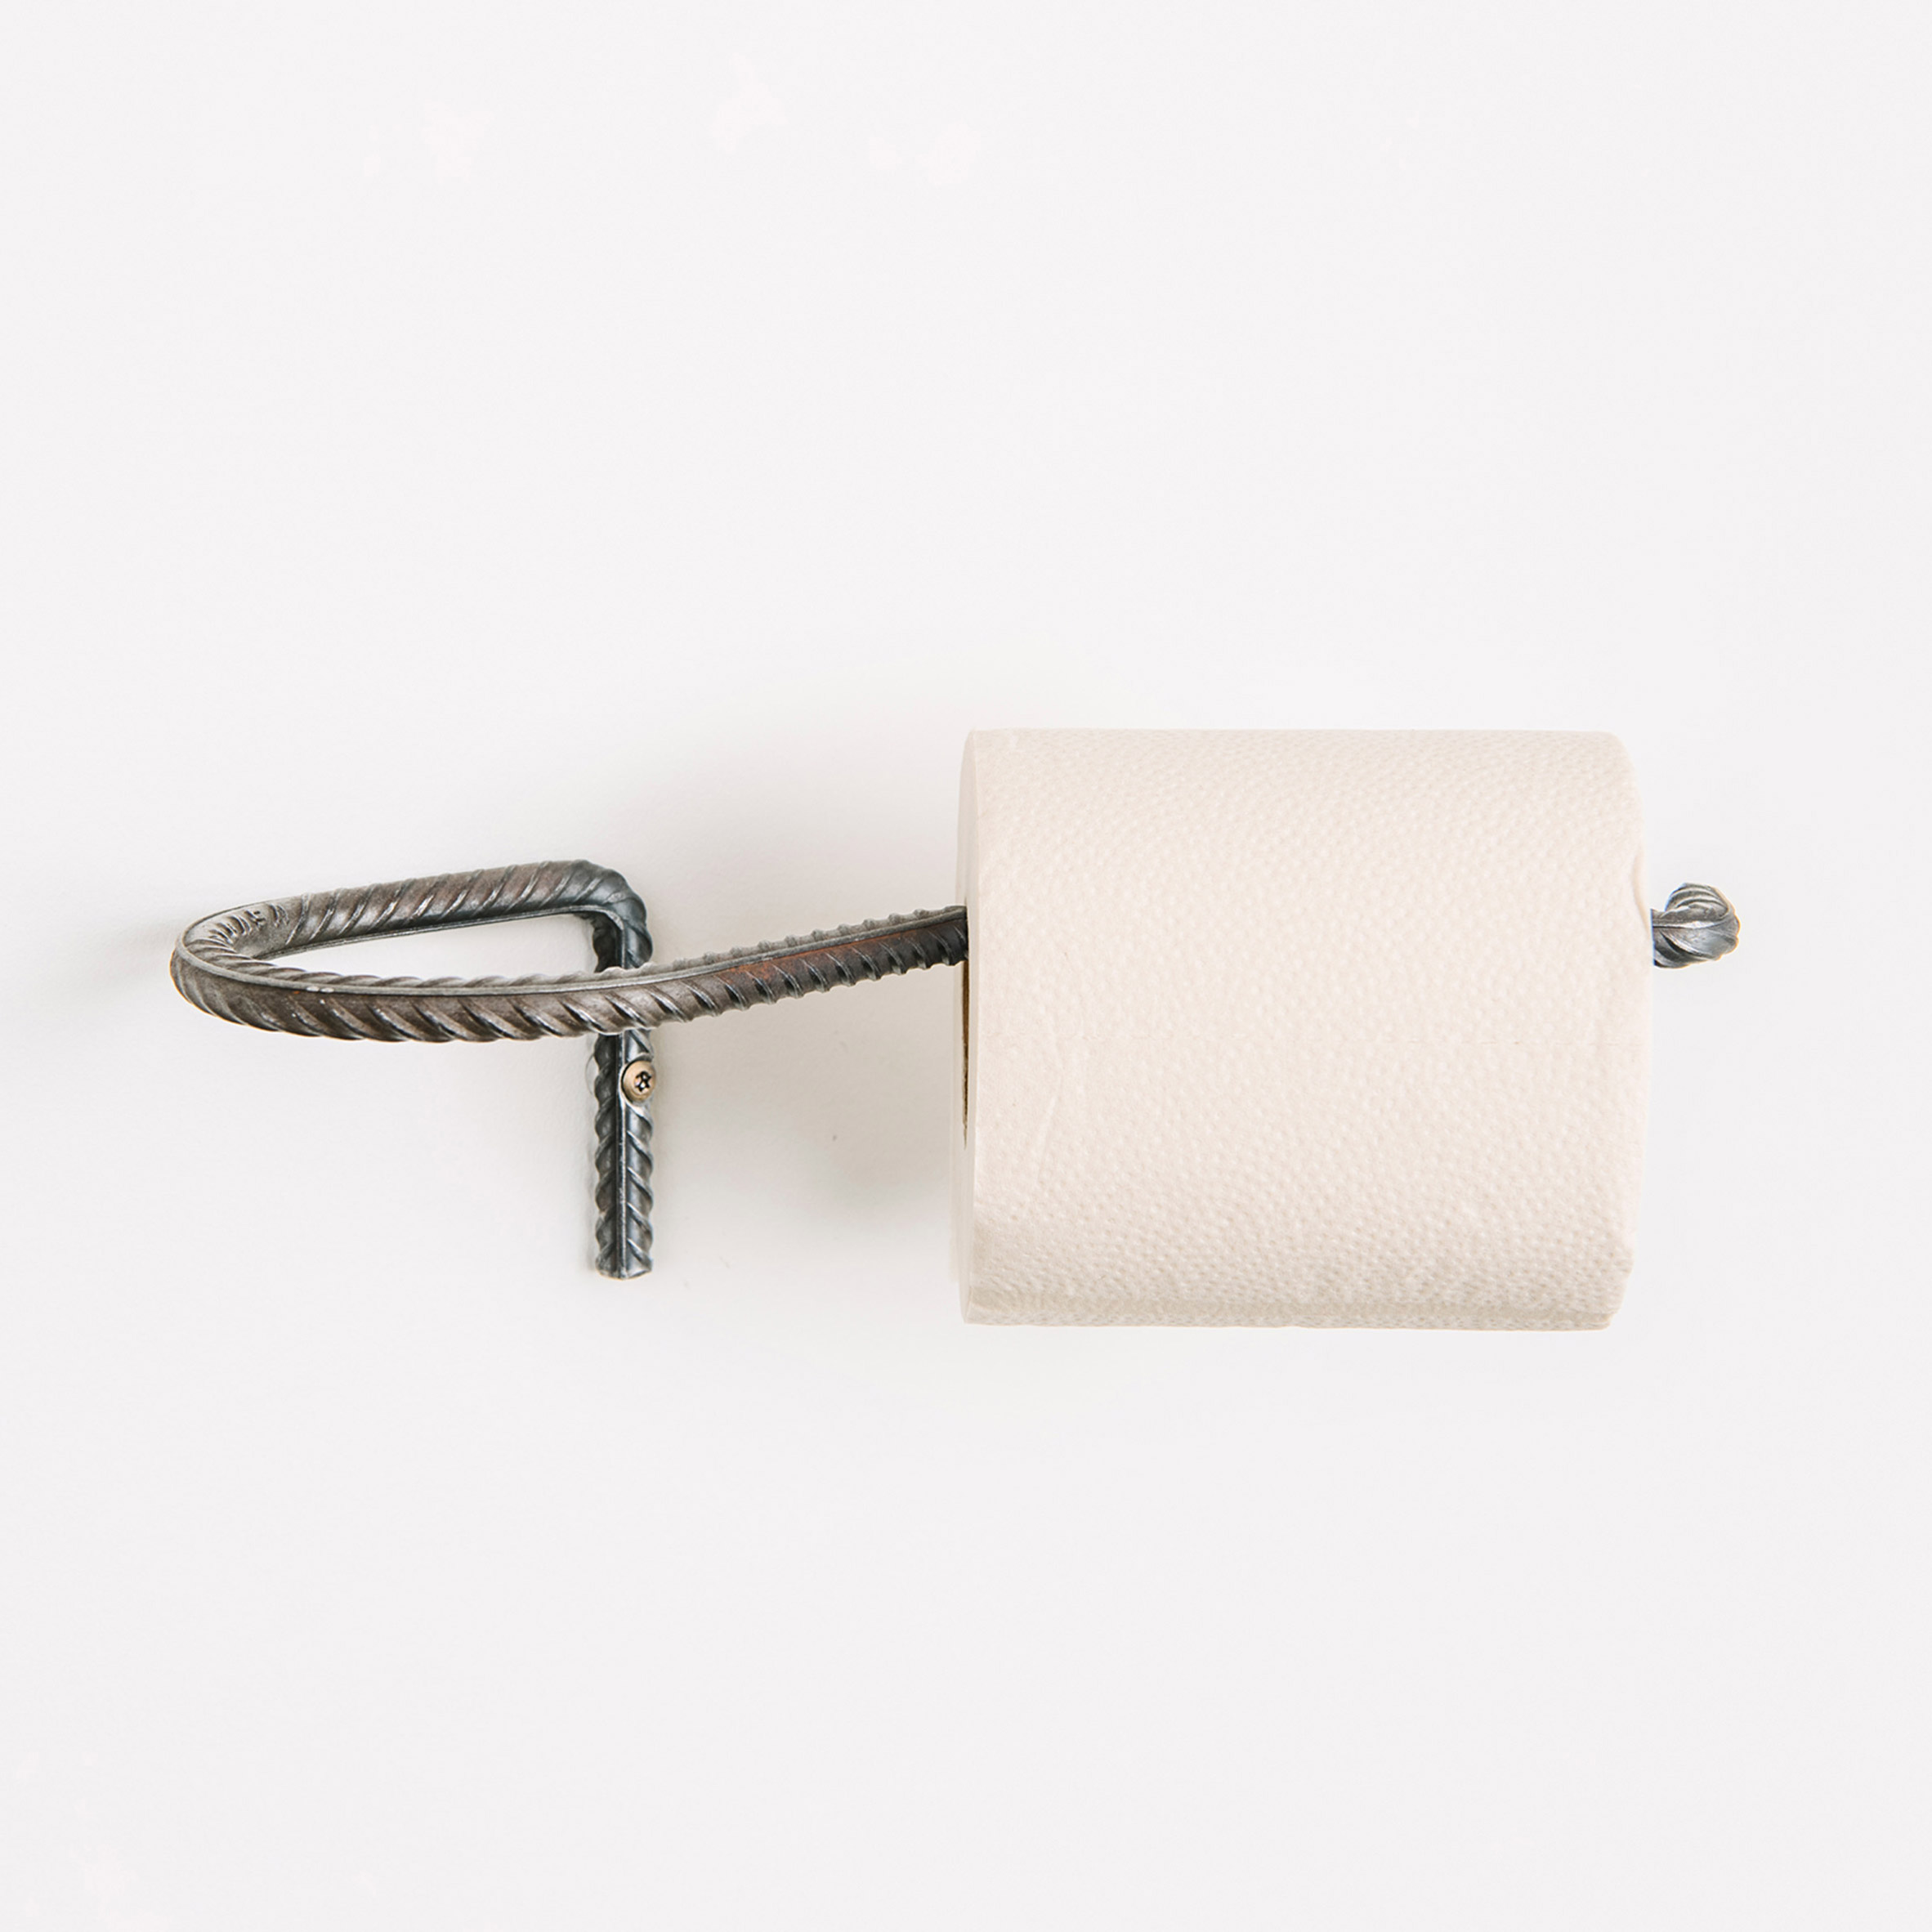 14 идей держателя для туалетной бумаги своими руками